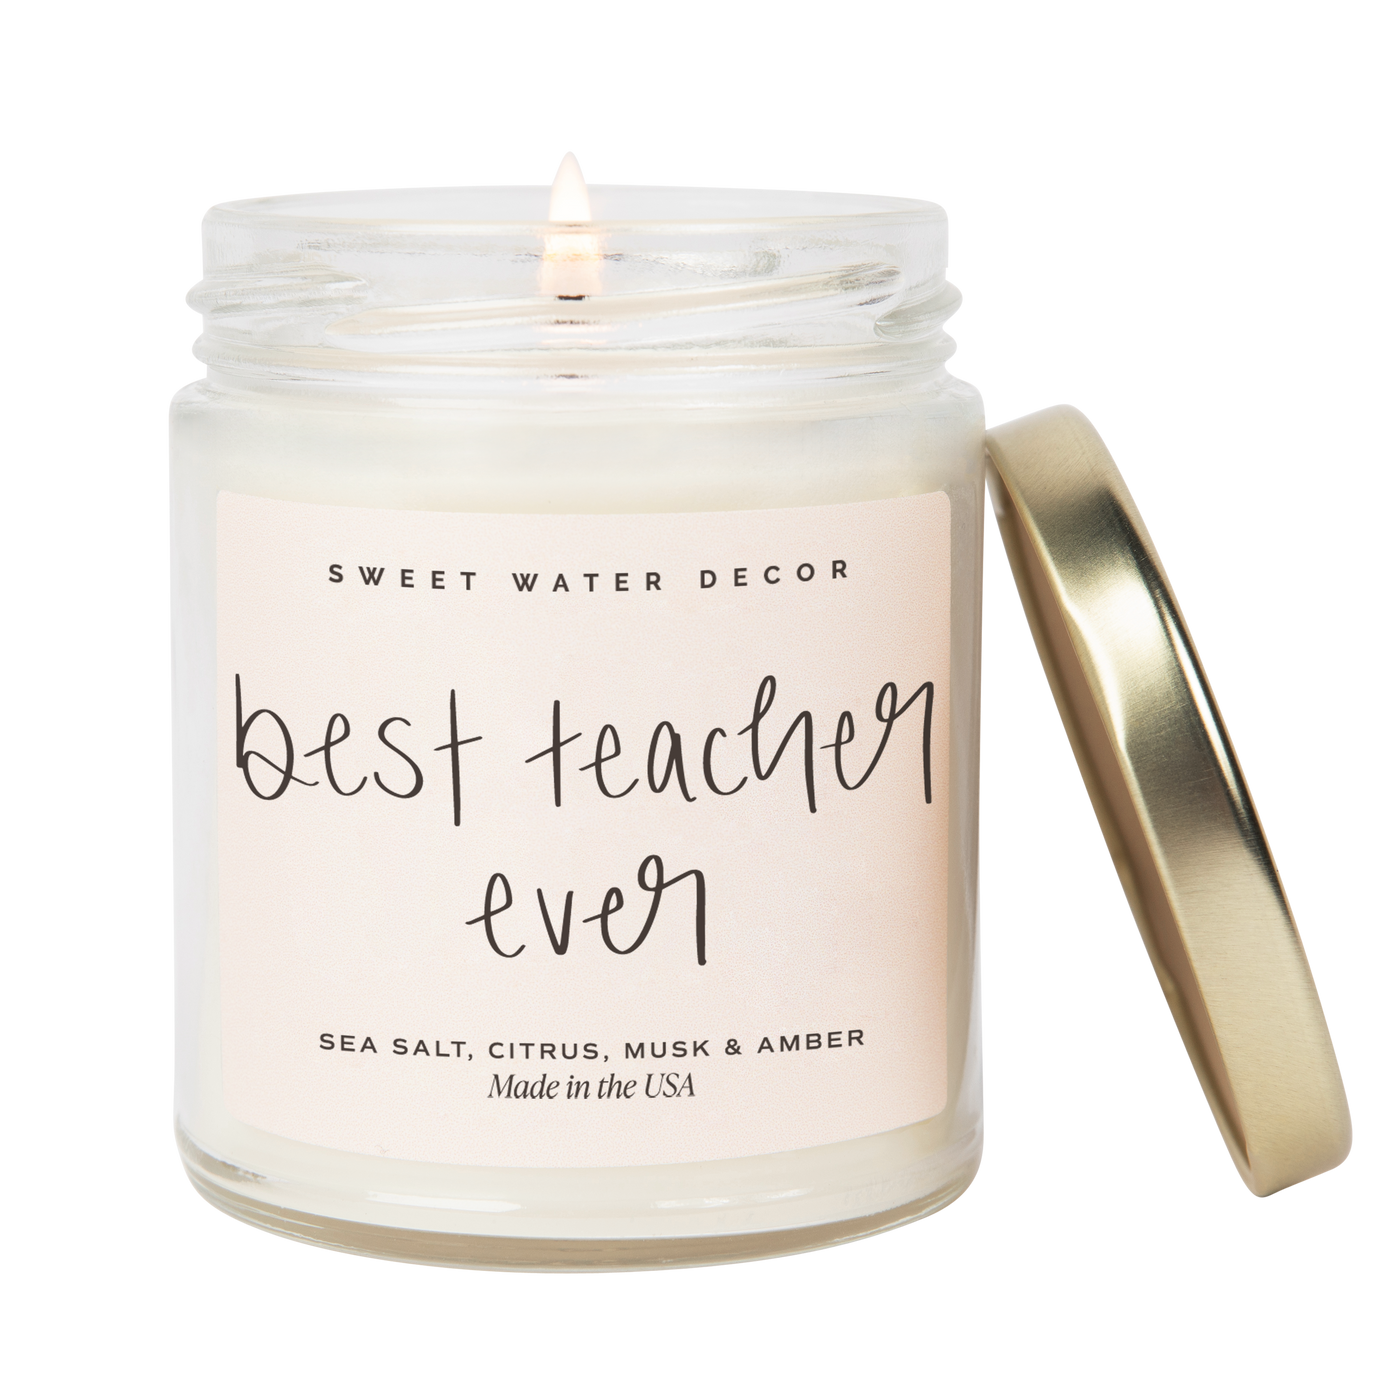 Best Teacher Ever Soy Candle - Clear Jar - 9 oz (Salt and Sea)